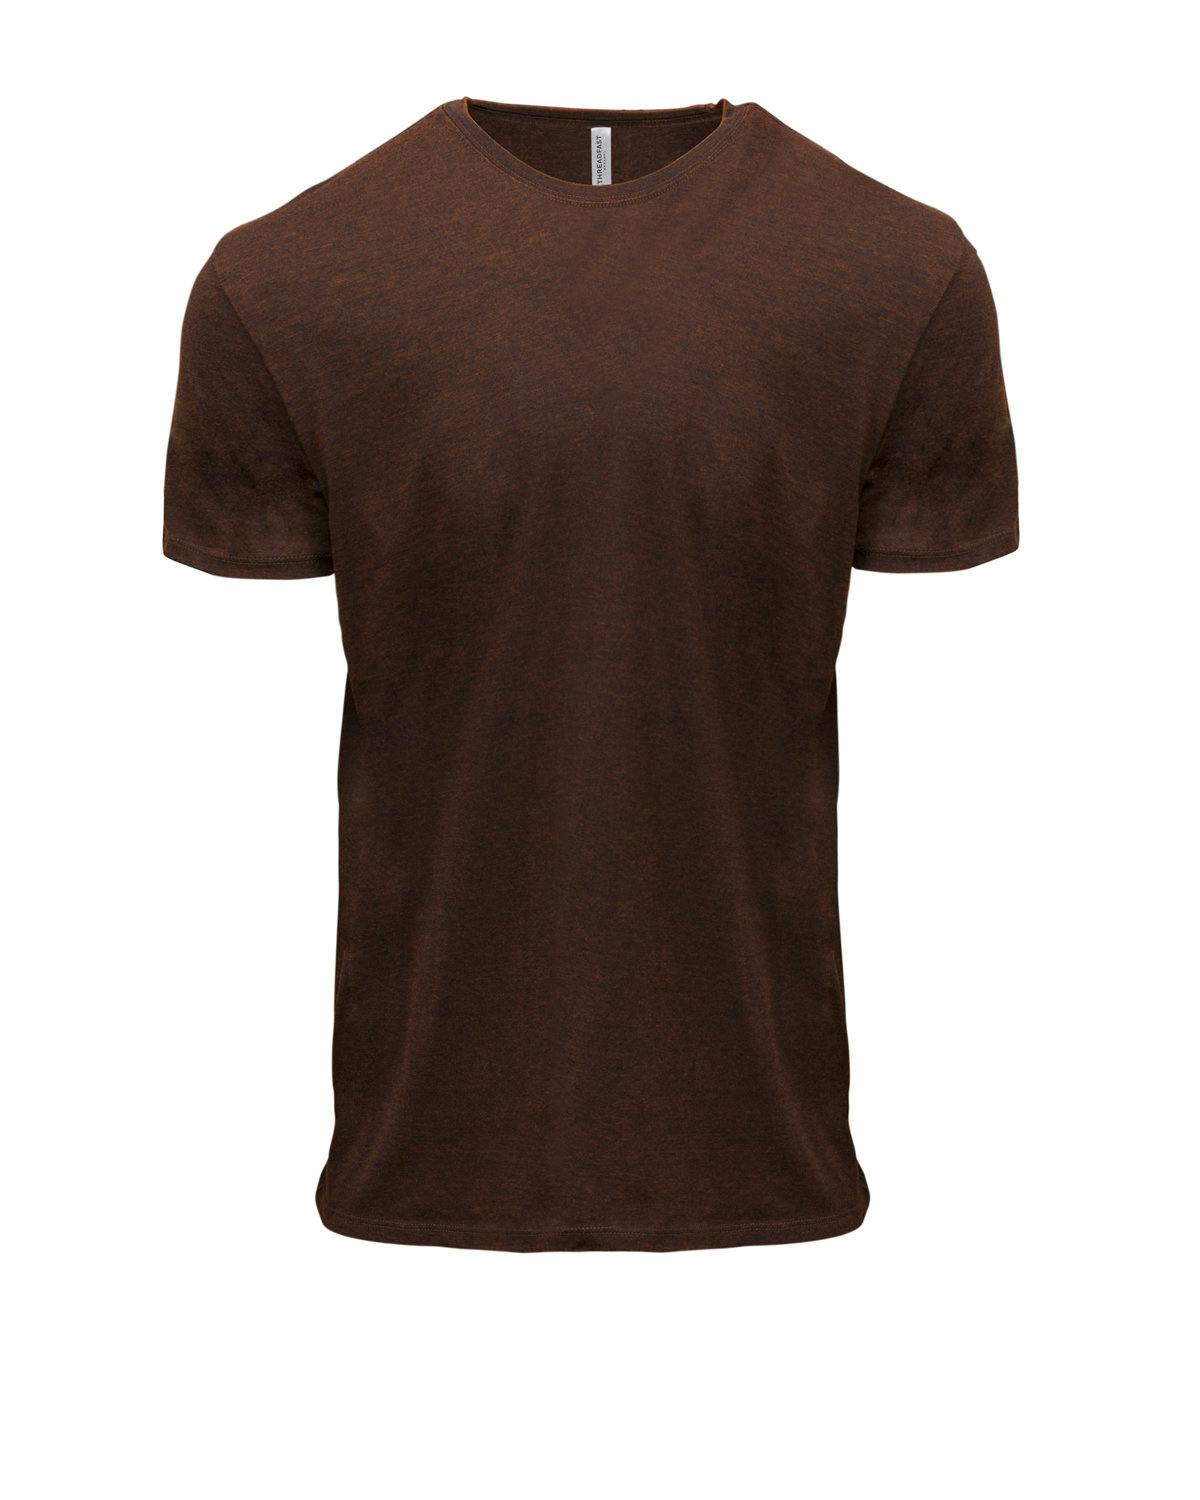 Image for Unisex Cross Dye Short-Sleeve T-Shirt